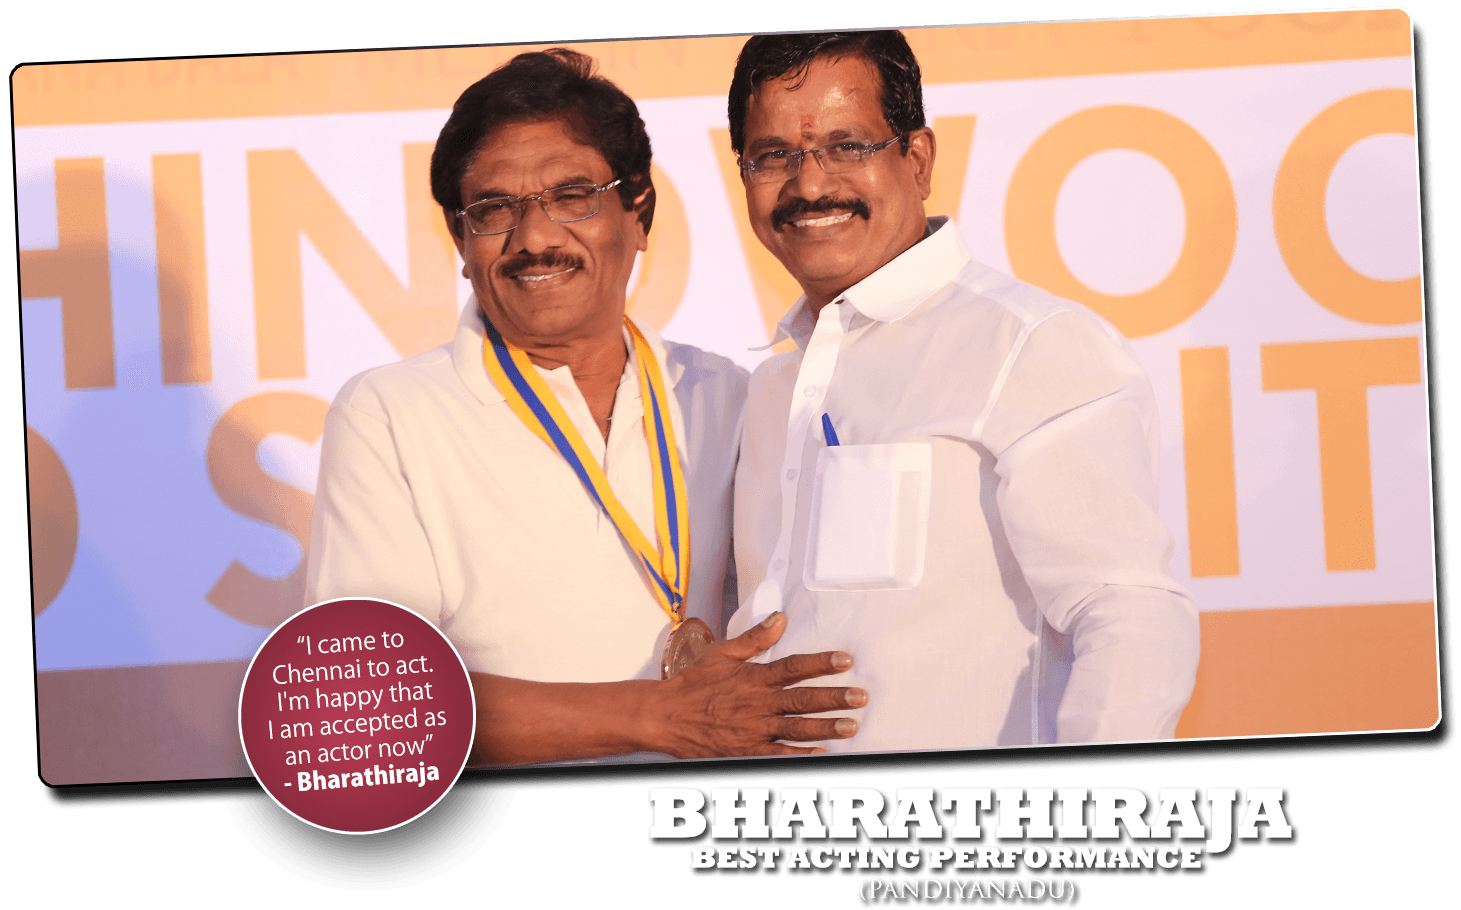 BHARATHIRAJA - Behindwoods Gold Medal Winner 2013